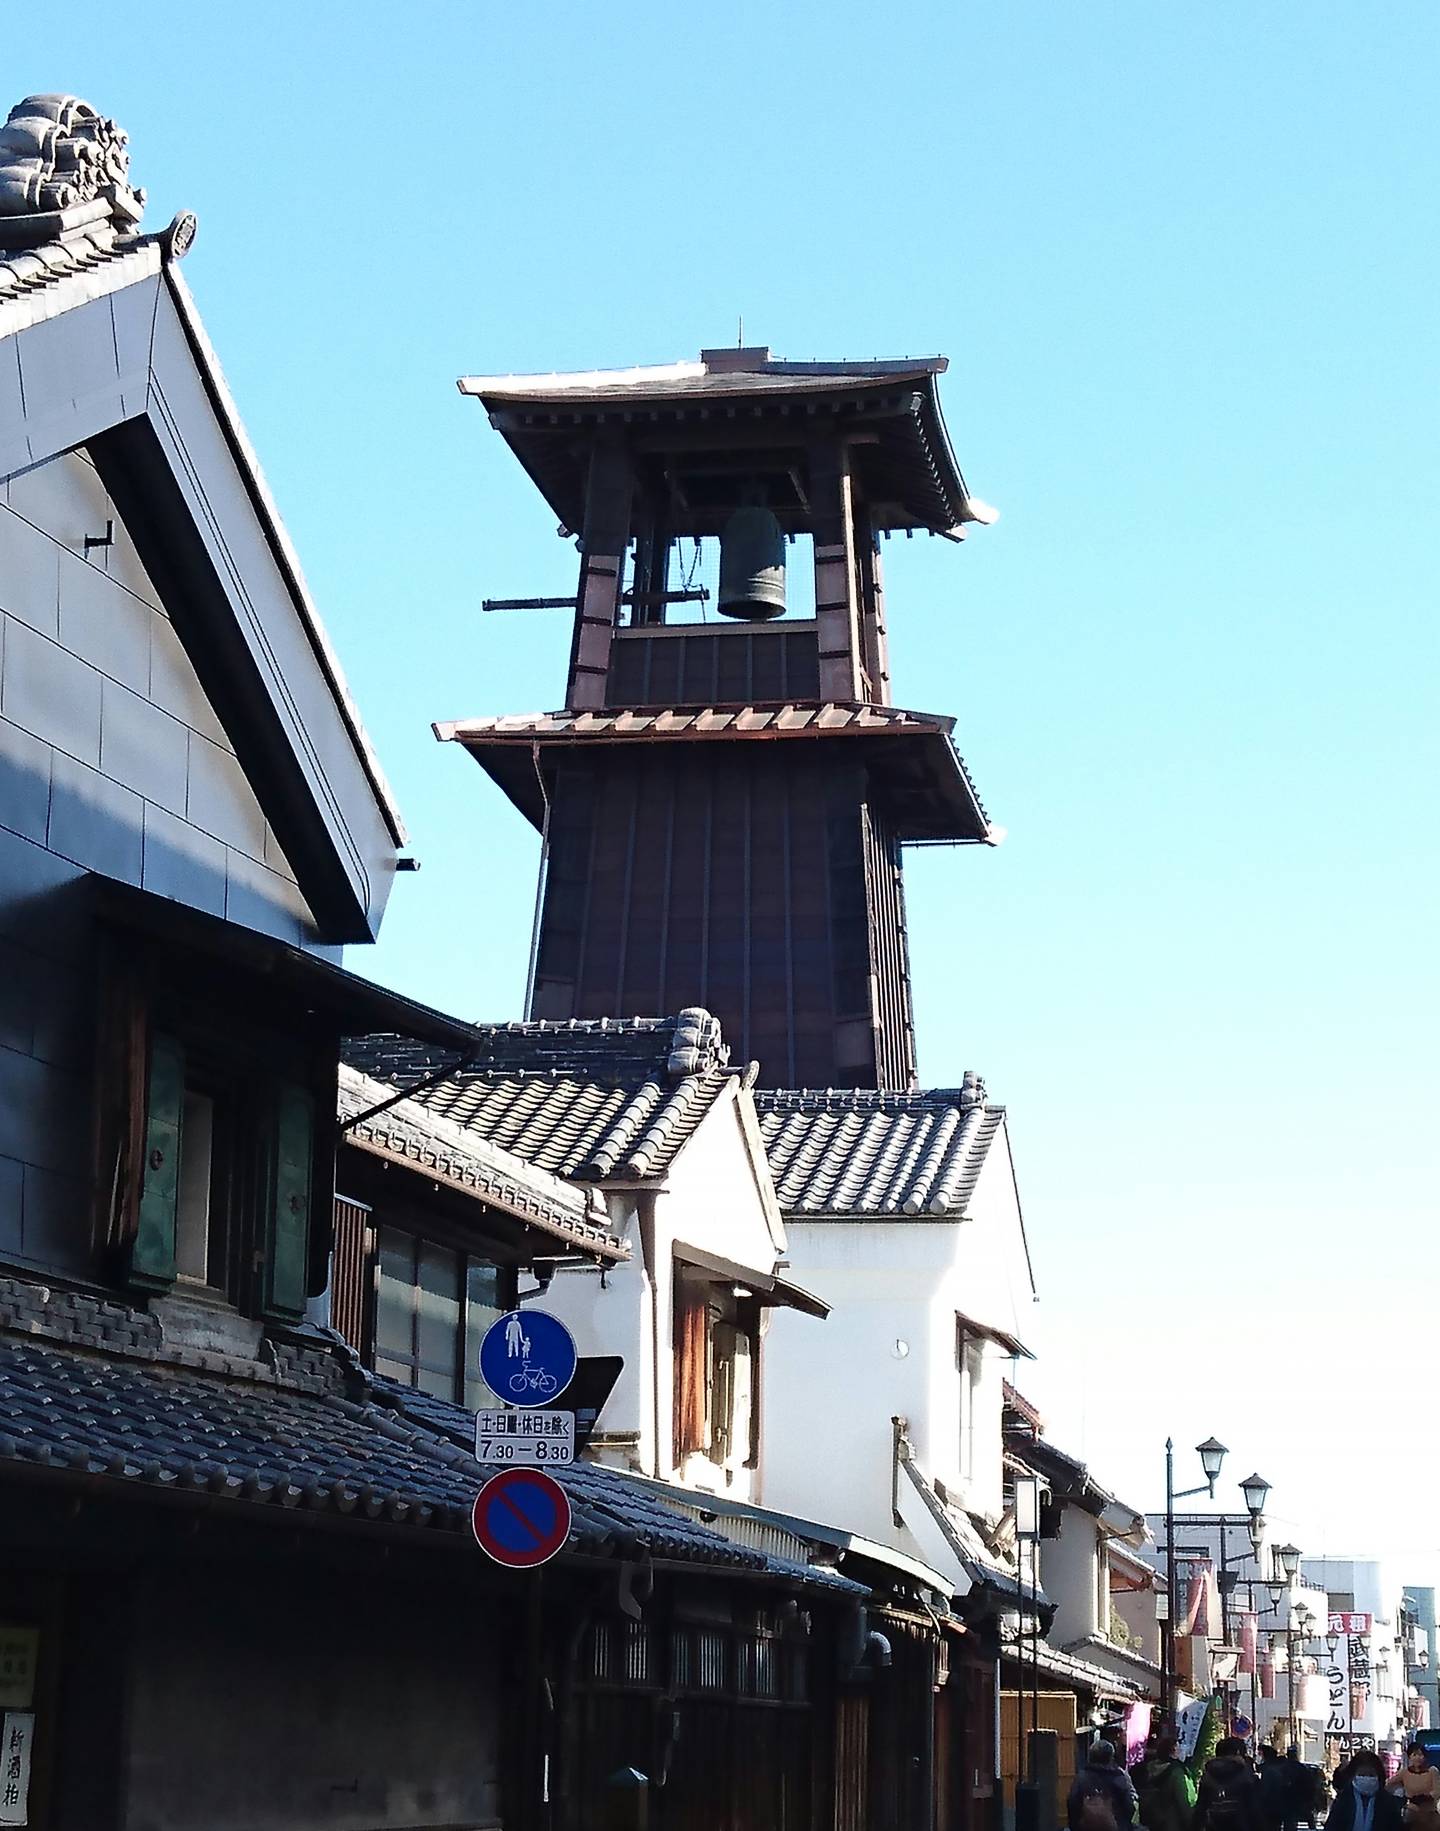 Toki no kane(Time Bell Tower) kawagoe